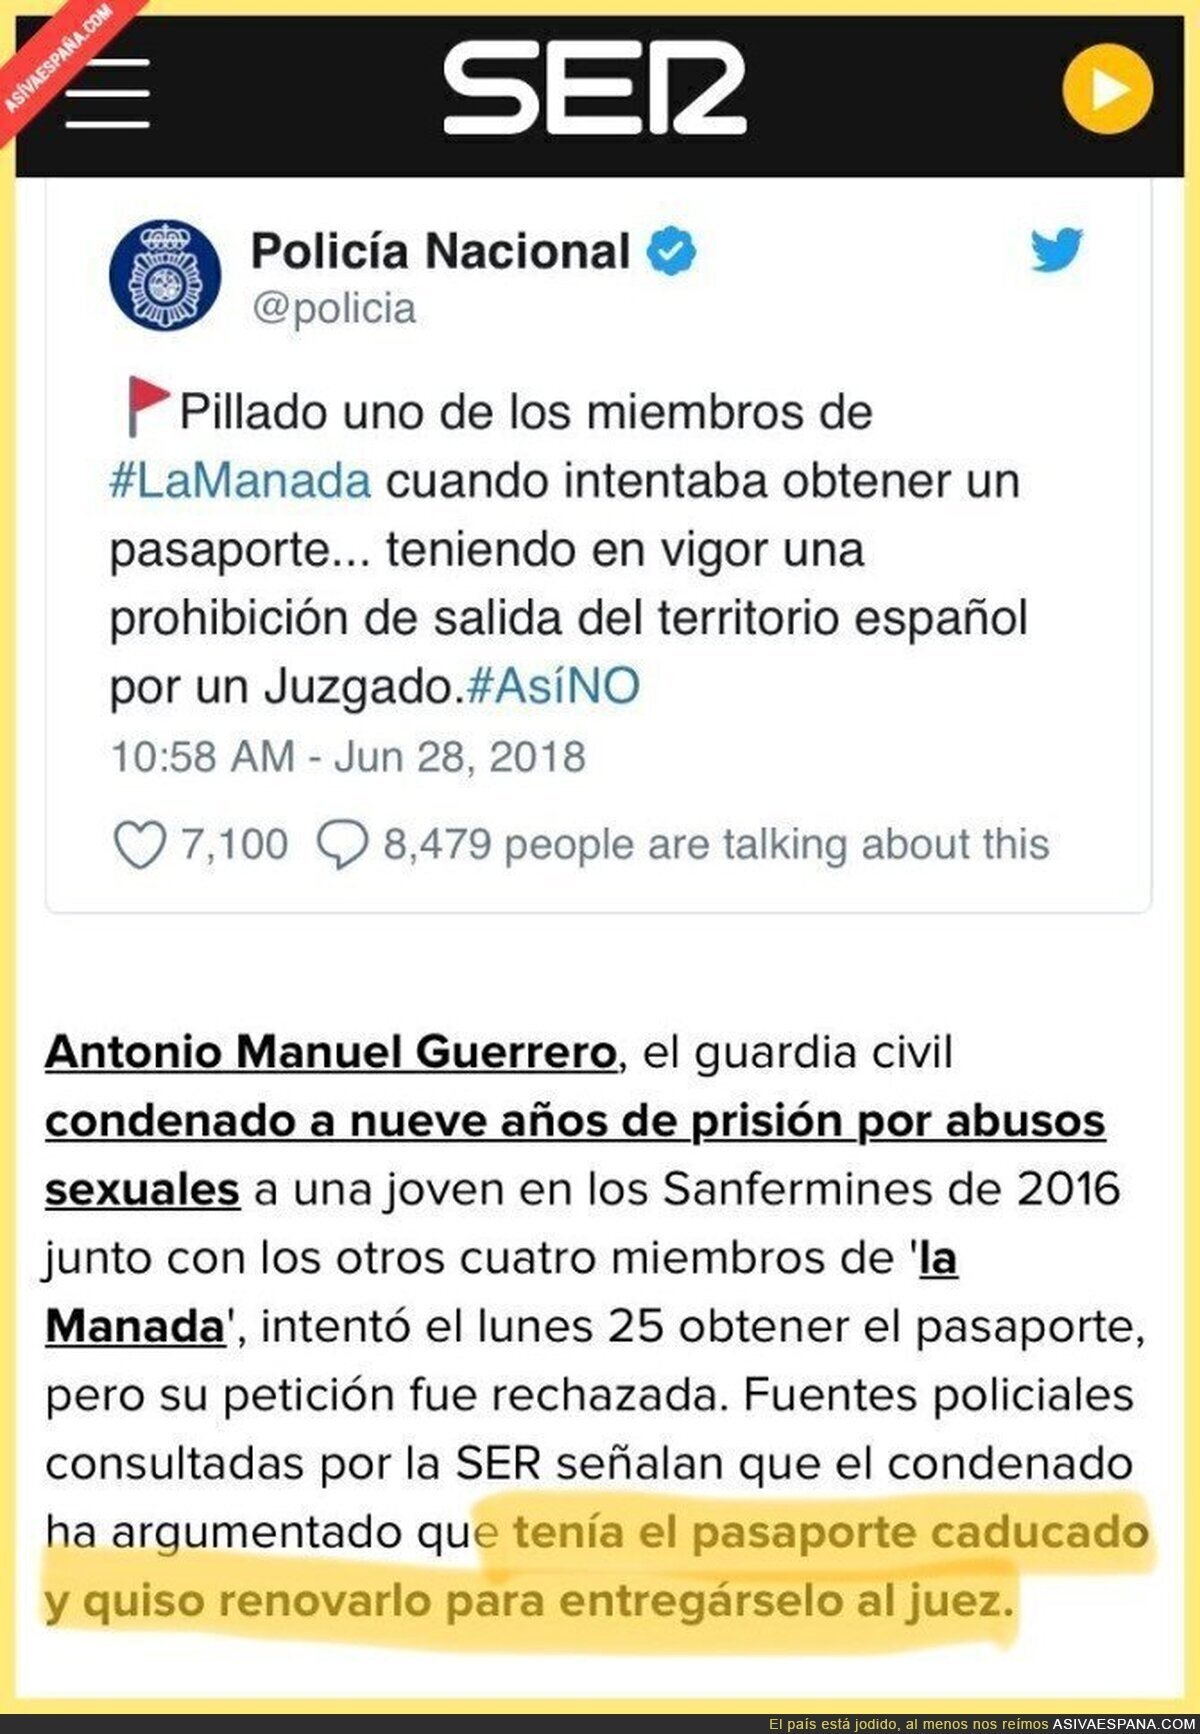 El Twitter de la Policía la lía con datos falsos sobre La Manada